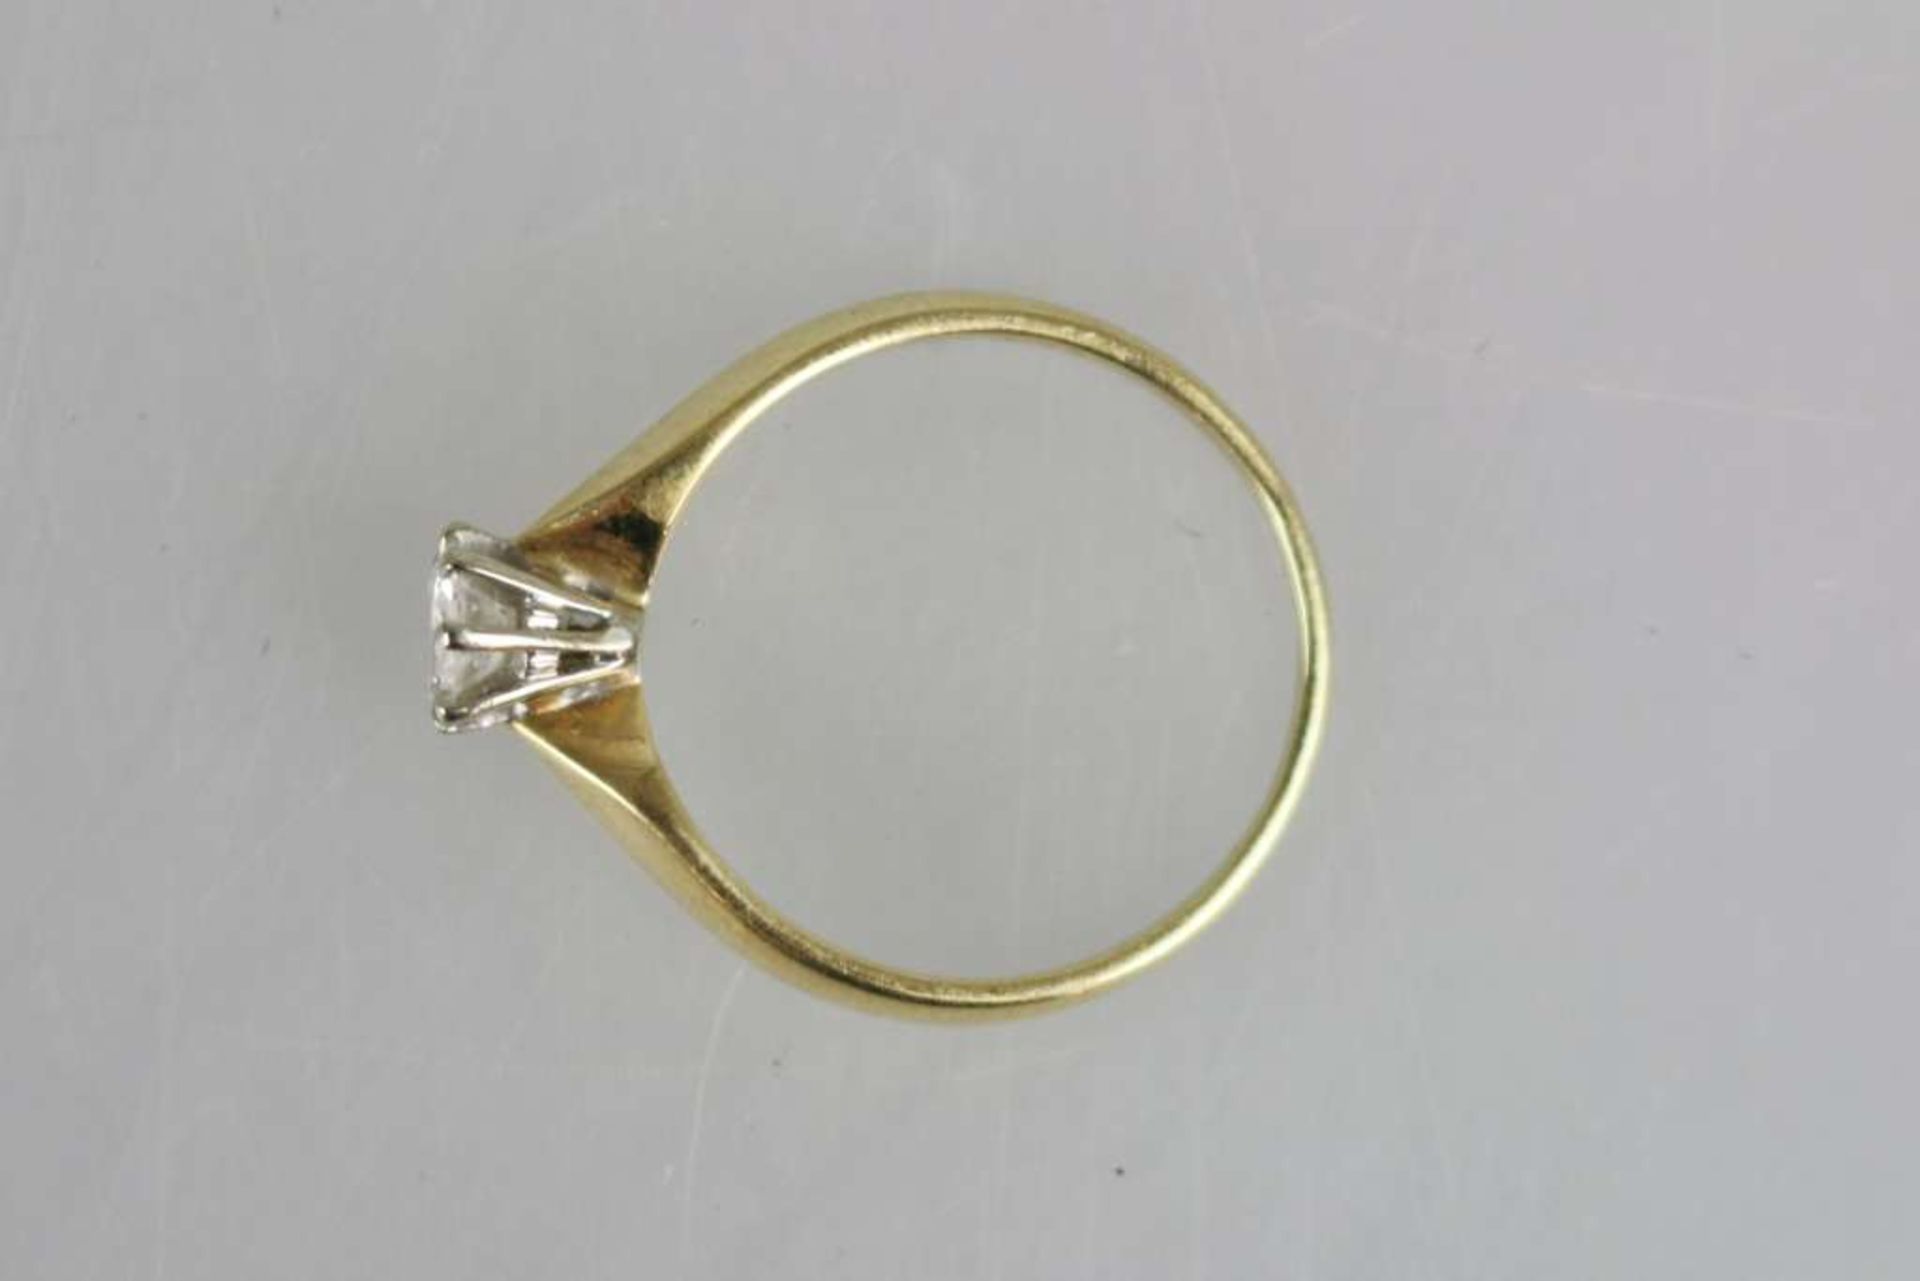 Damenring mit Solitärbrillant, schmaler Ring in 585er GG, leicht erhöt eingefasst ein Solitäbrillant - Bild 3 aus 3